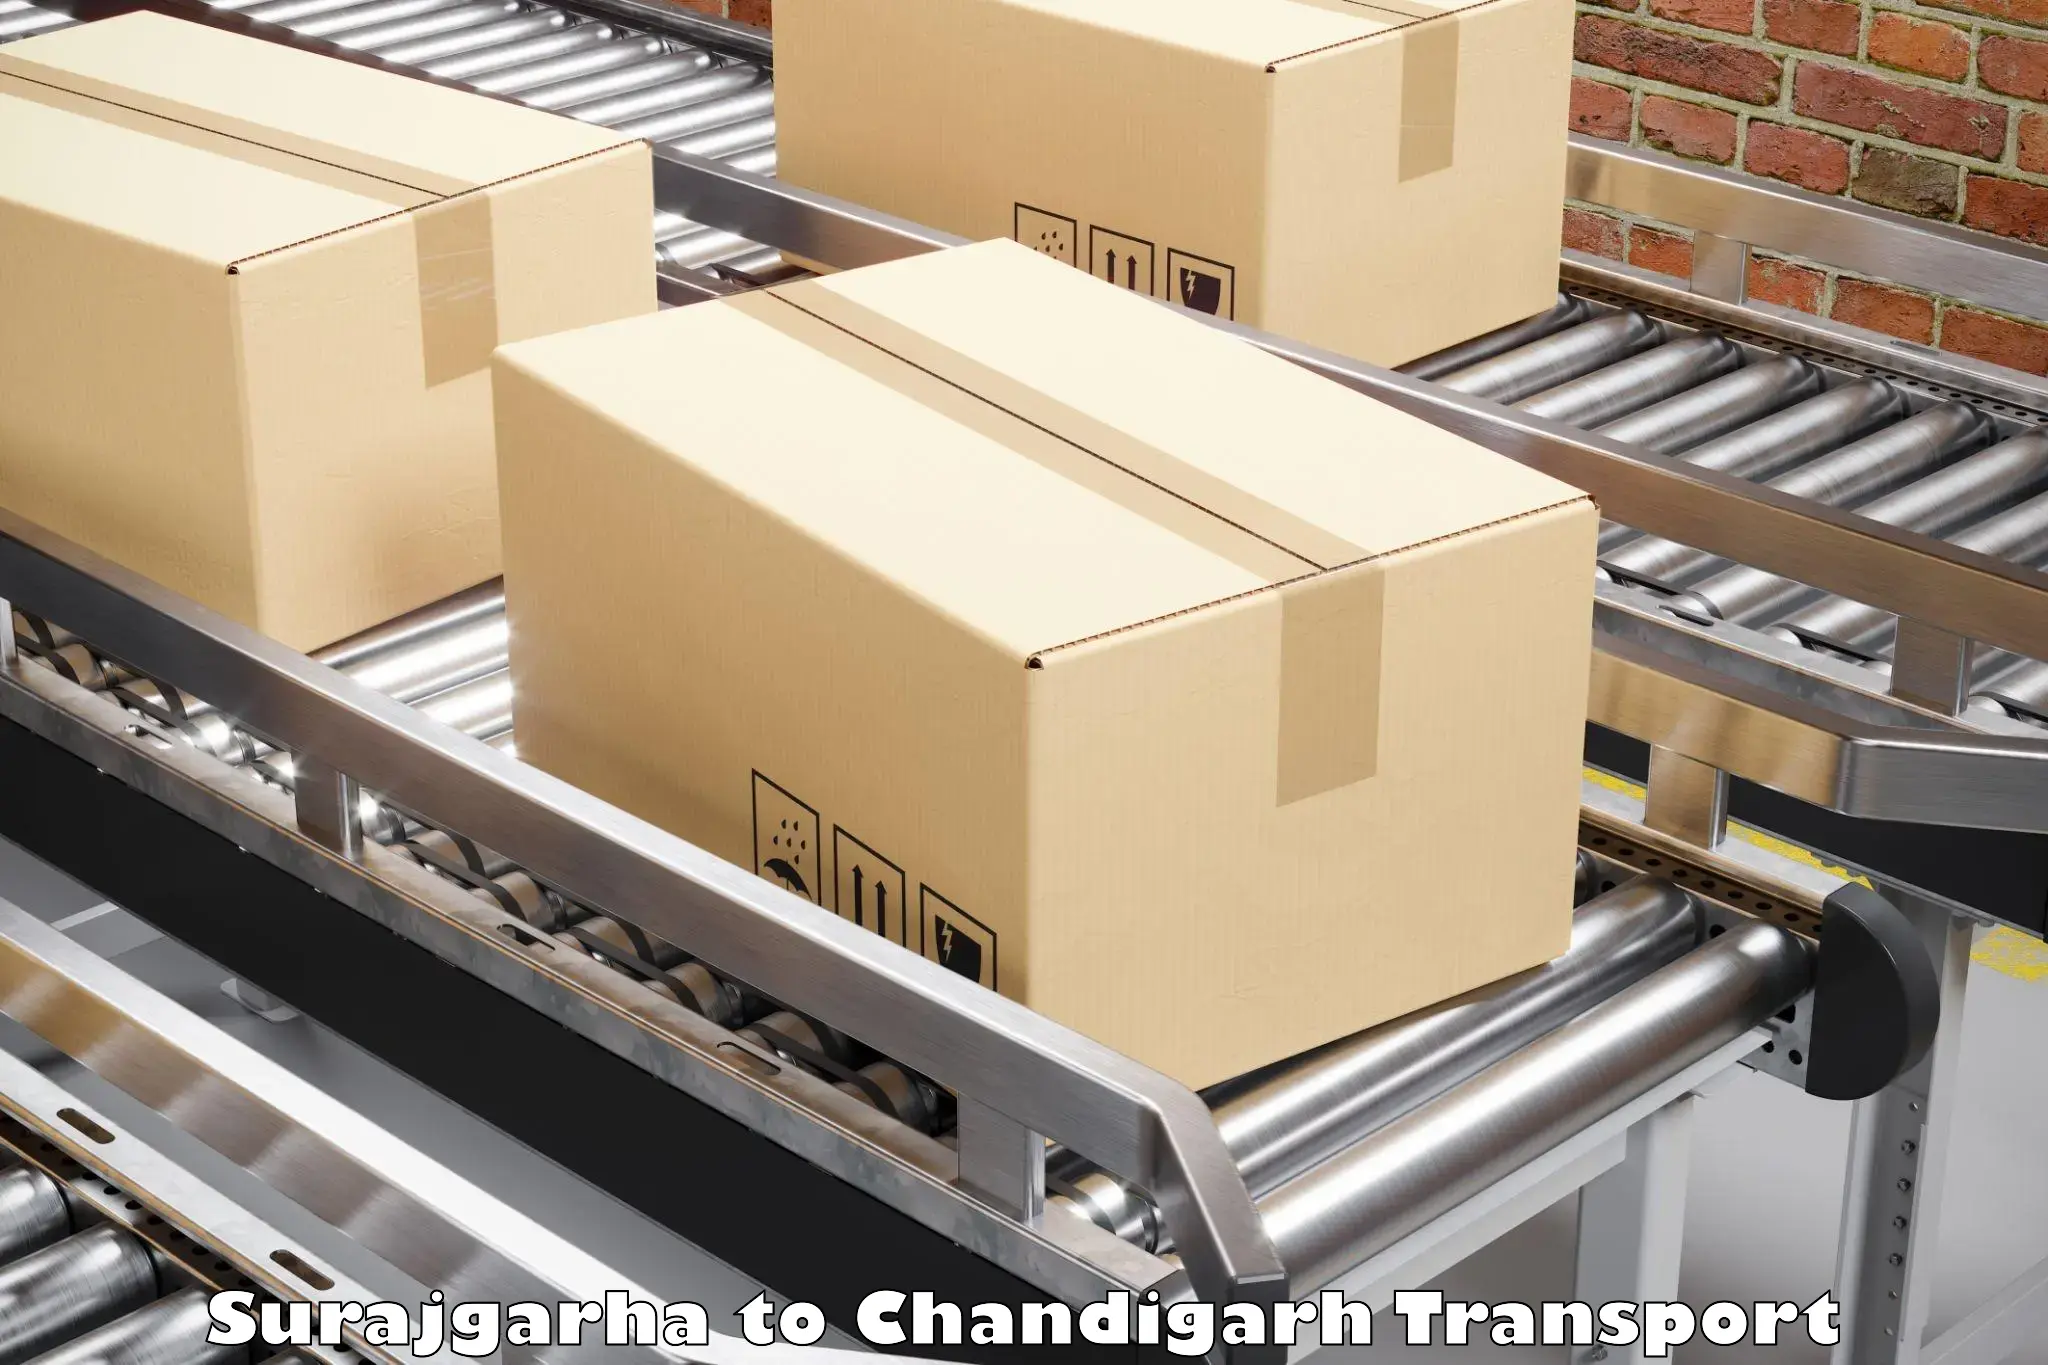 Online transport Surajgarha to Chandigarh